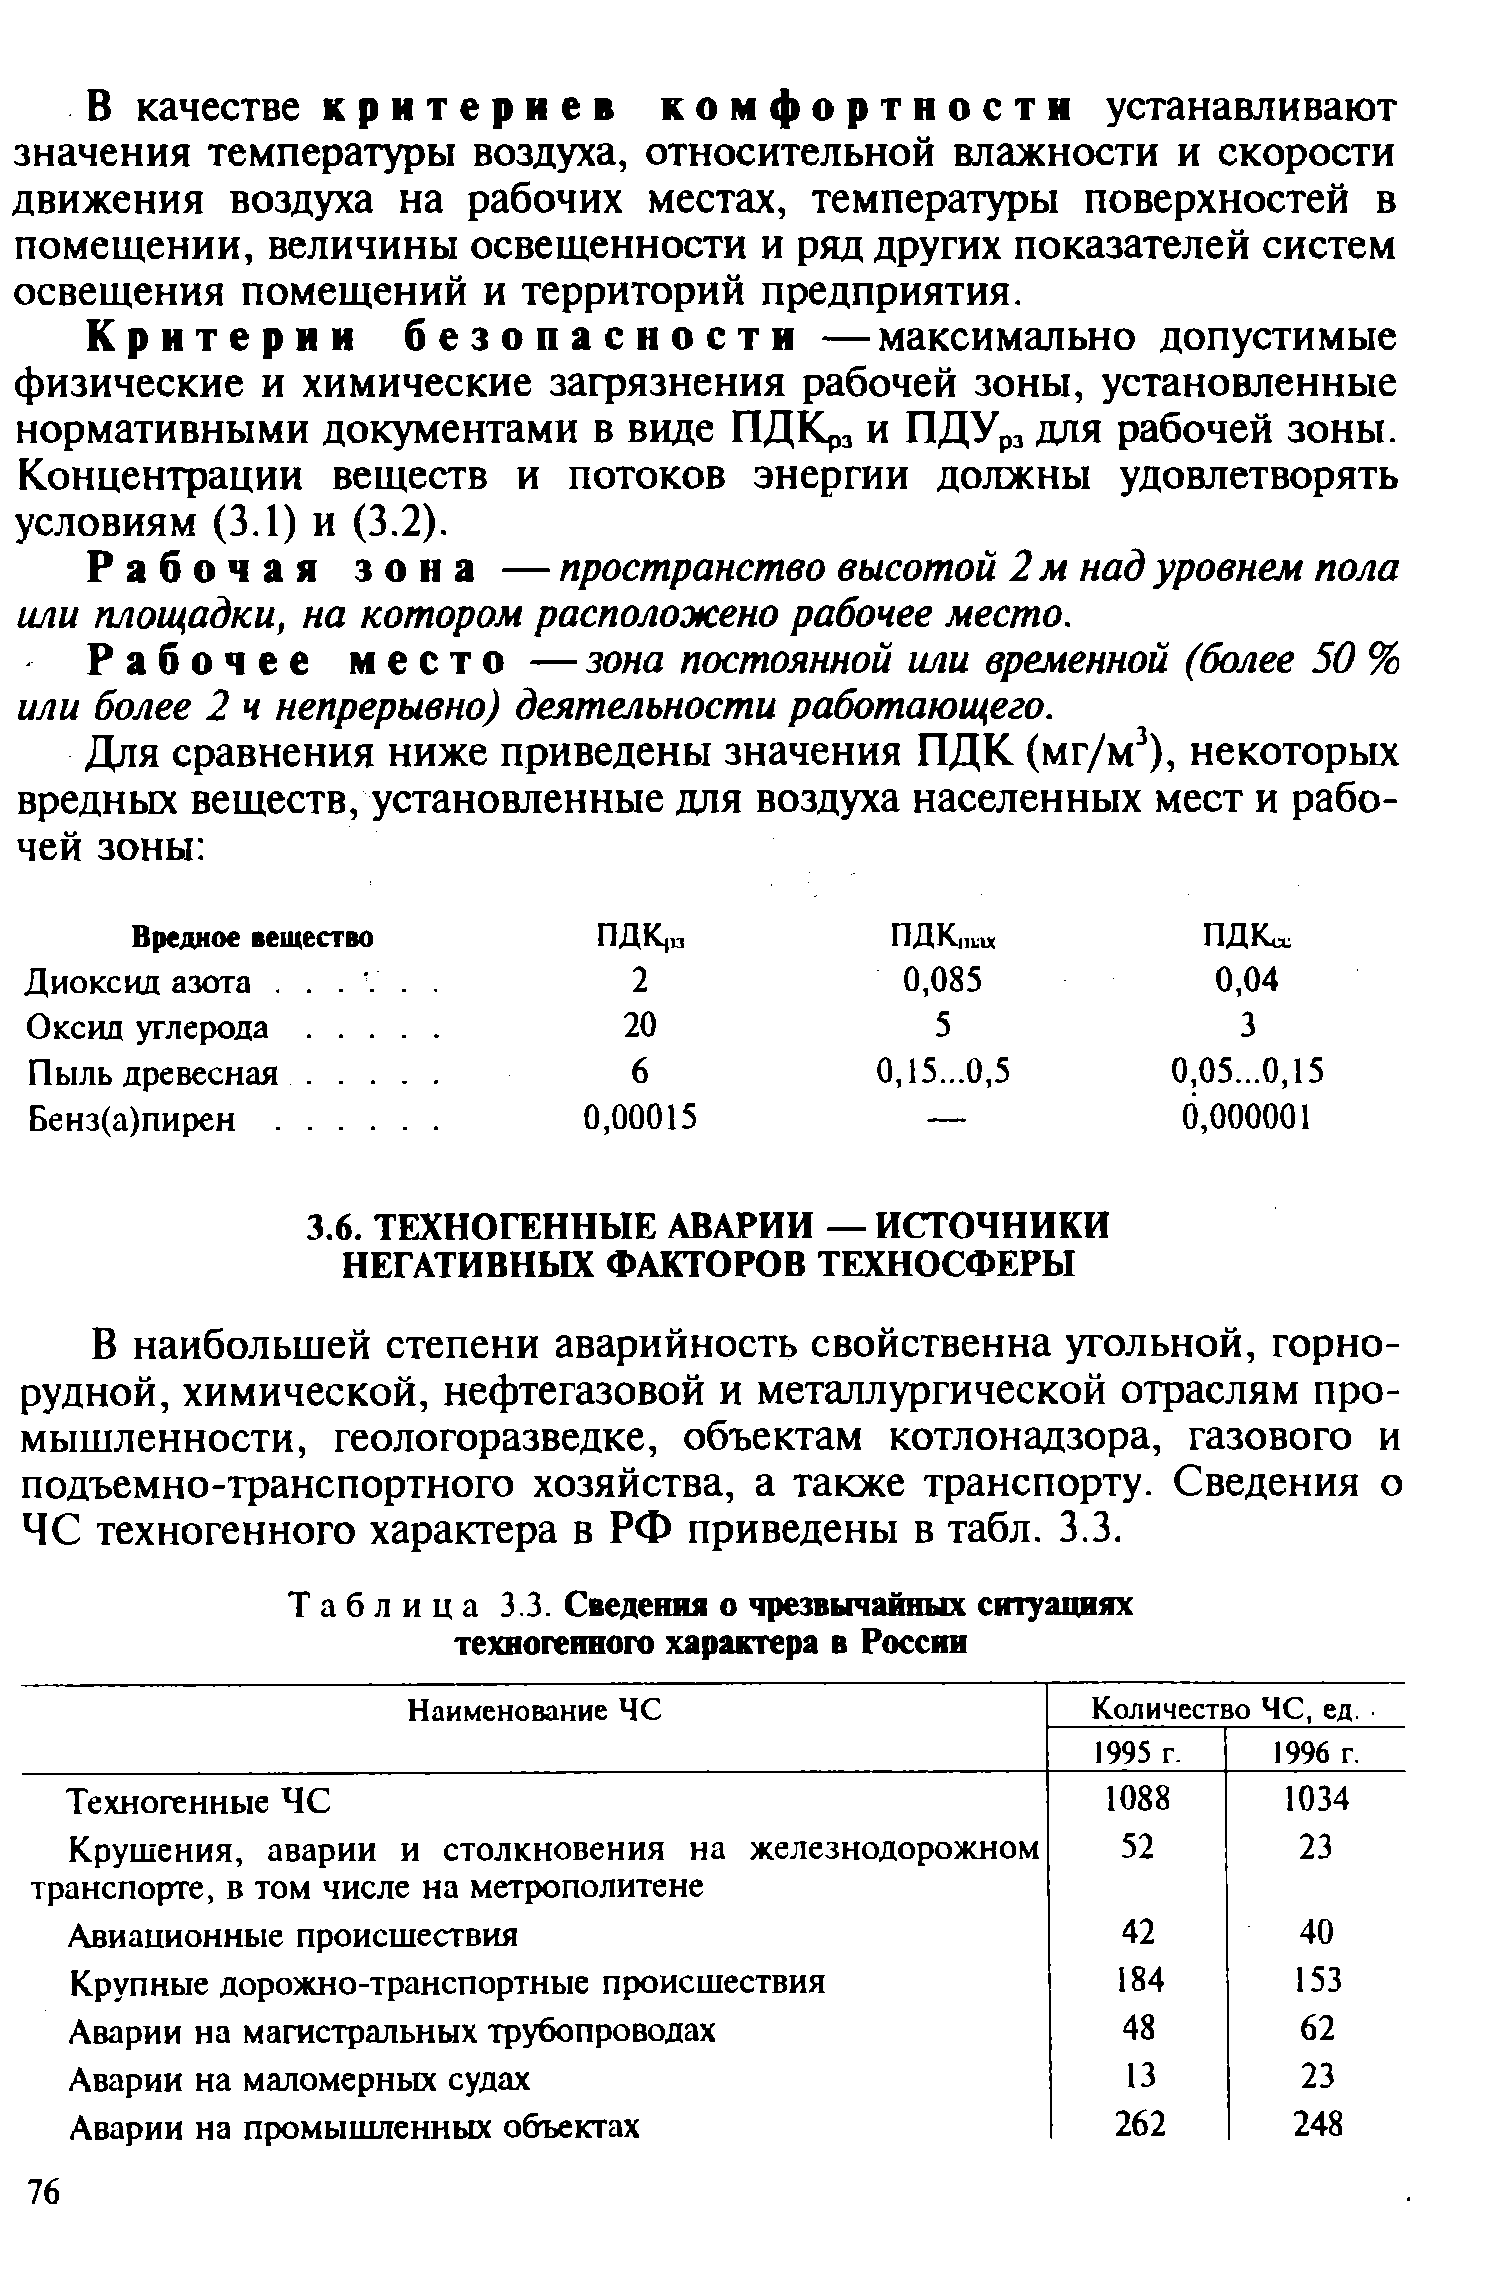 Таблица 3.3. Сведения о чрезвычайных ситуациях техногенного характера в России
